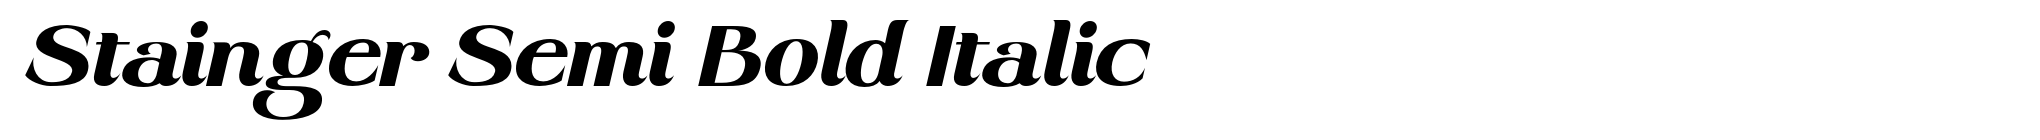 Stainger Semi Bold Italic image